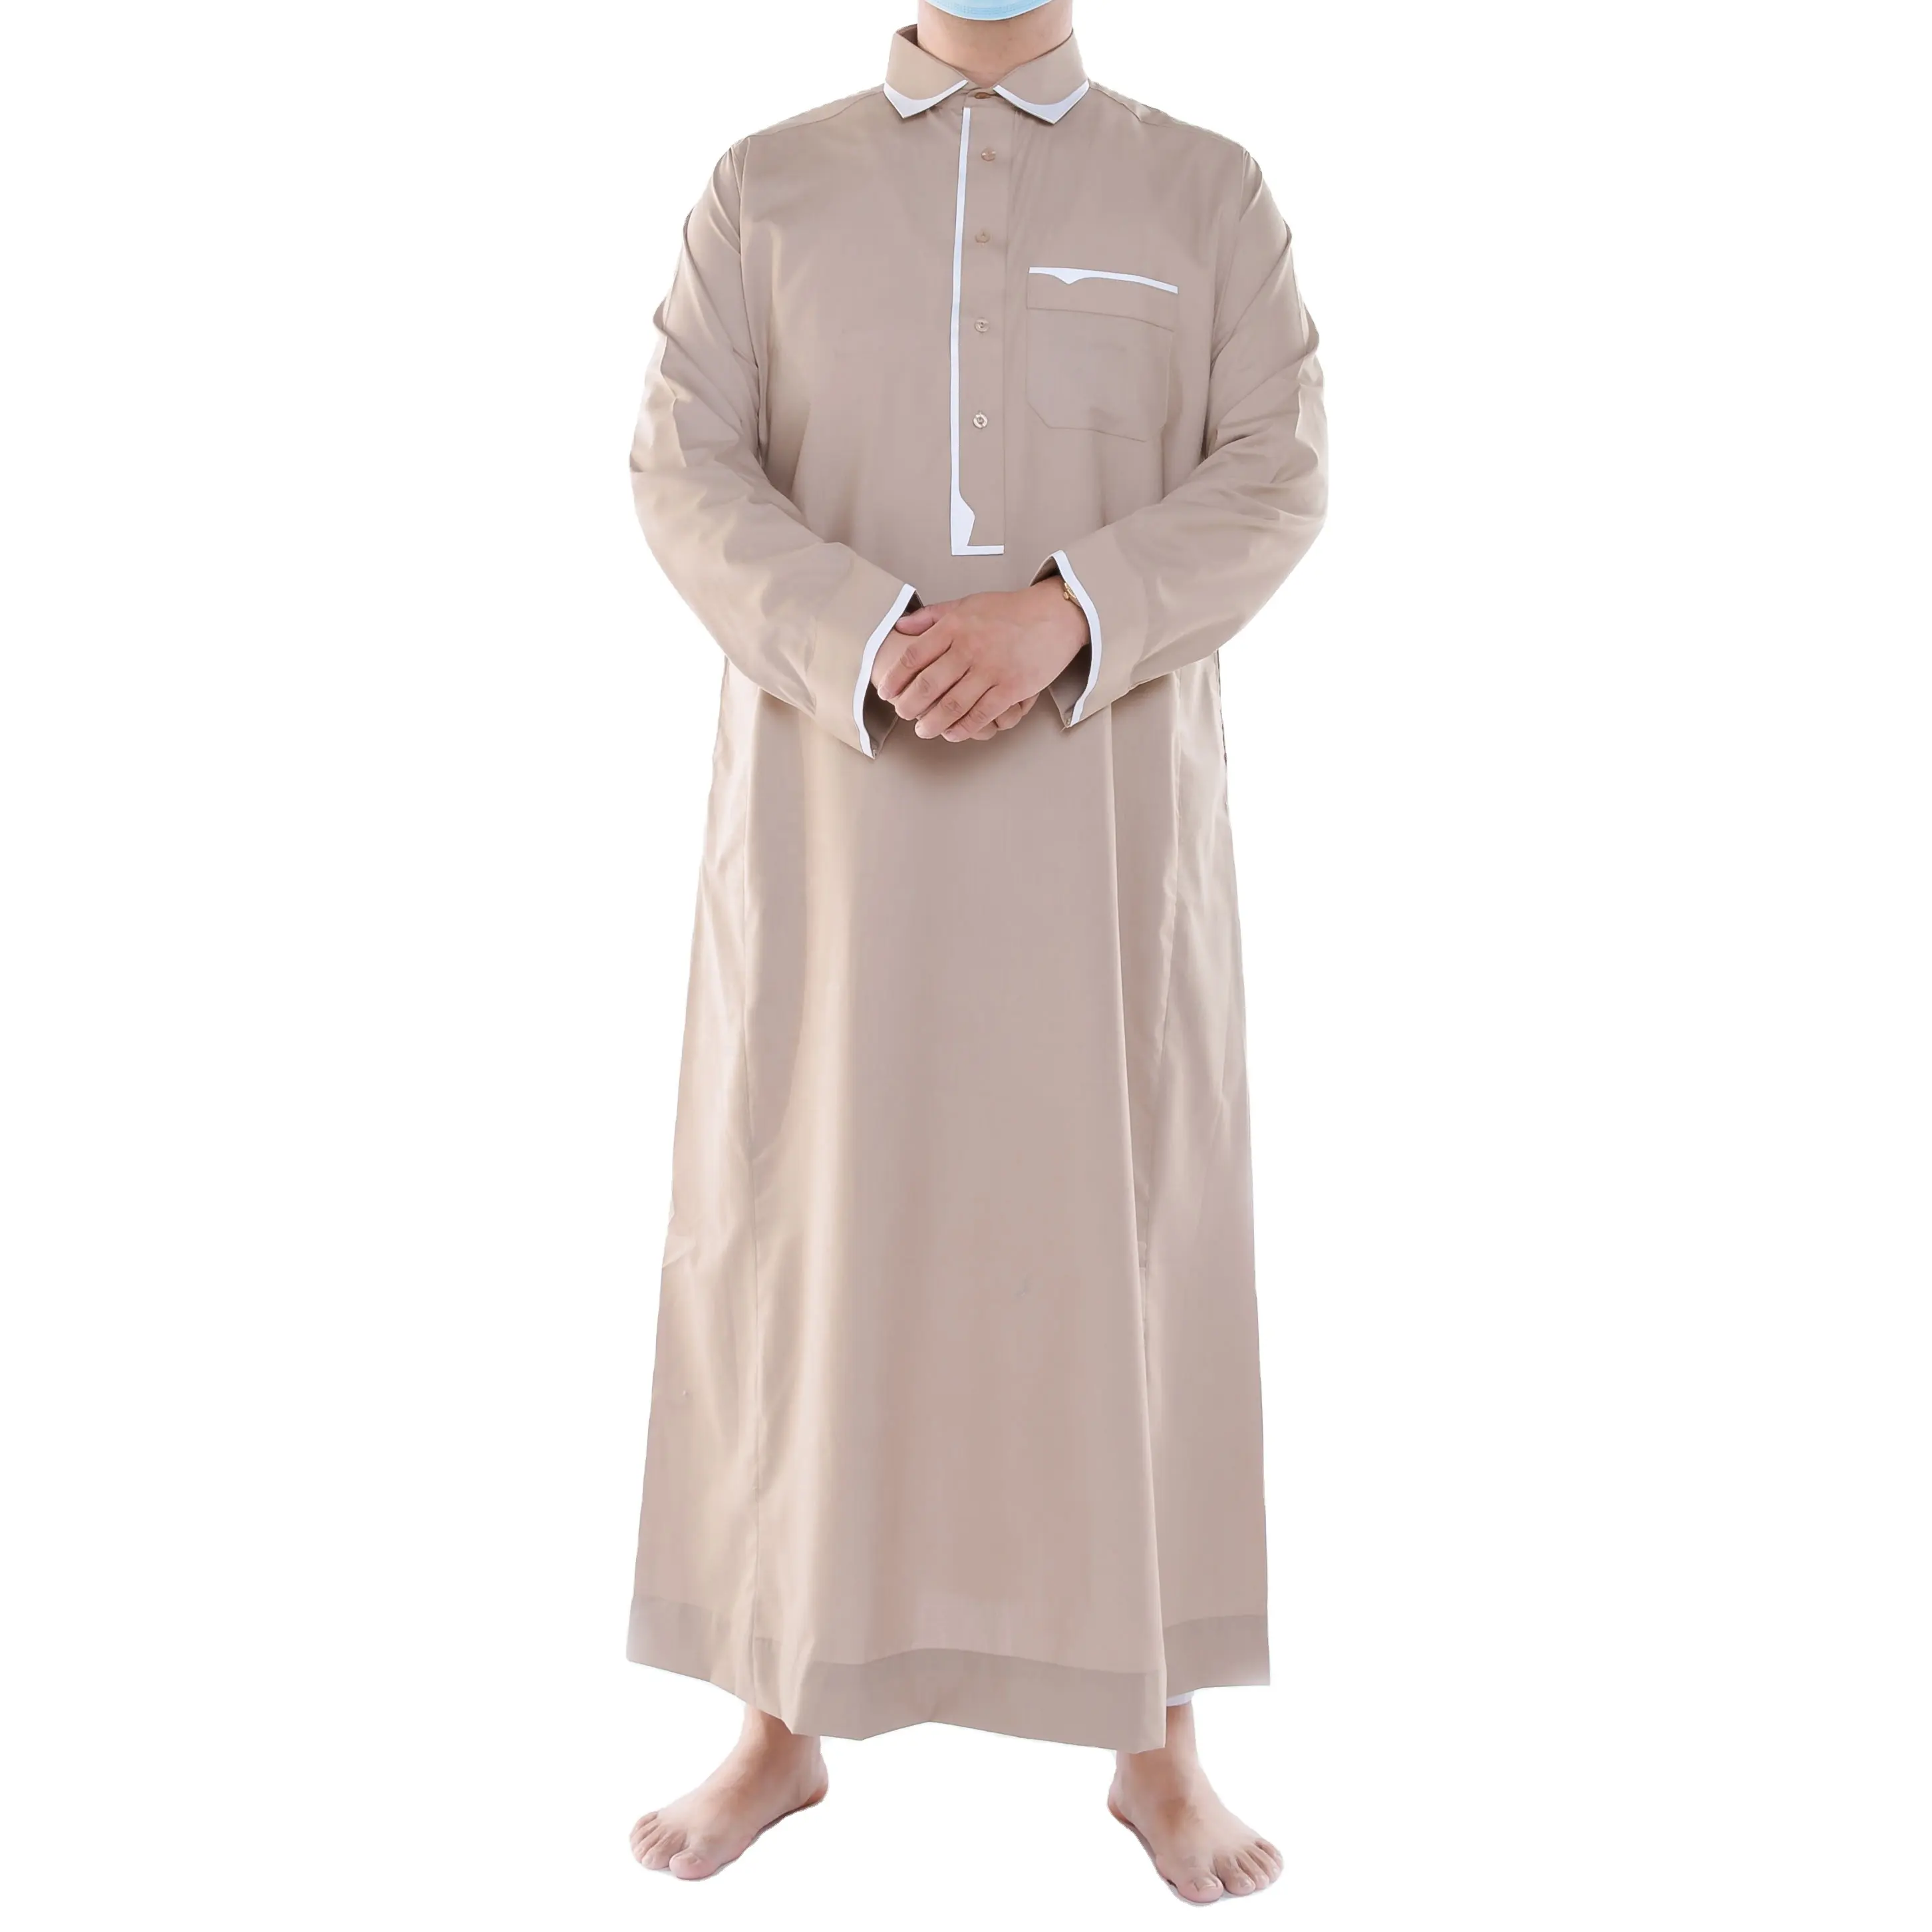 Yeni tasarım parlak malzeme işlemeli erkekler Thobe etnik giyim islam giyim için modern müslüman elbise erkekler